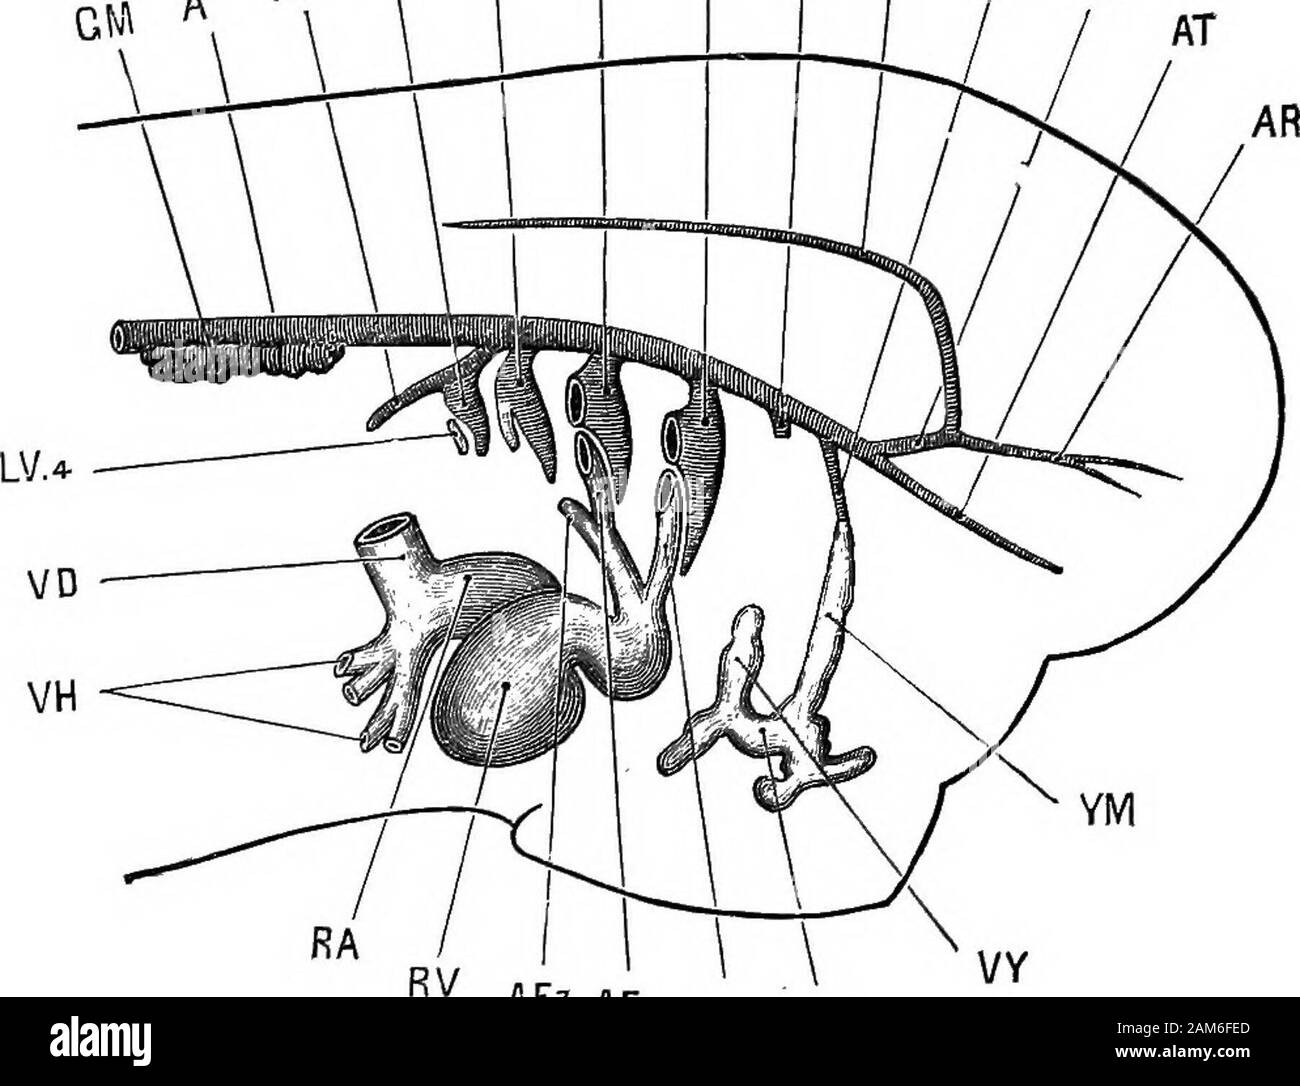 La grenouille : une introduction à l'anatomie, Histologie et Embryologie, . les récipients au commissural carotides entoure le infundi-bulum du cerveau : E Fi, E FS, E F3, F4, E les navires de branchies efférente première, deuxième, troisième et quatrième arcs branchiaux ; EH, efferenthyoidean ; EM navire, navire mandibulaire efférent ; GE, gill externe;GM, glomérule ; KA segmentaires ou archinephric headkidney conduit ; KP, ou pronéphros ; KSi, KS3, premier et troisième nephrostomes ofpronephros ; RT, truncis artériel. l'aorte dorsale dans le toit du phar3Tix. La nageoire dorsale aortseof les deux parties courir vers l'avant a Banque D'Images